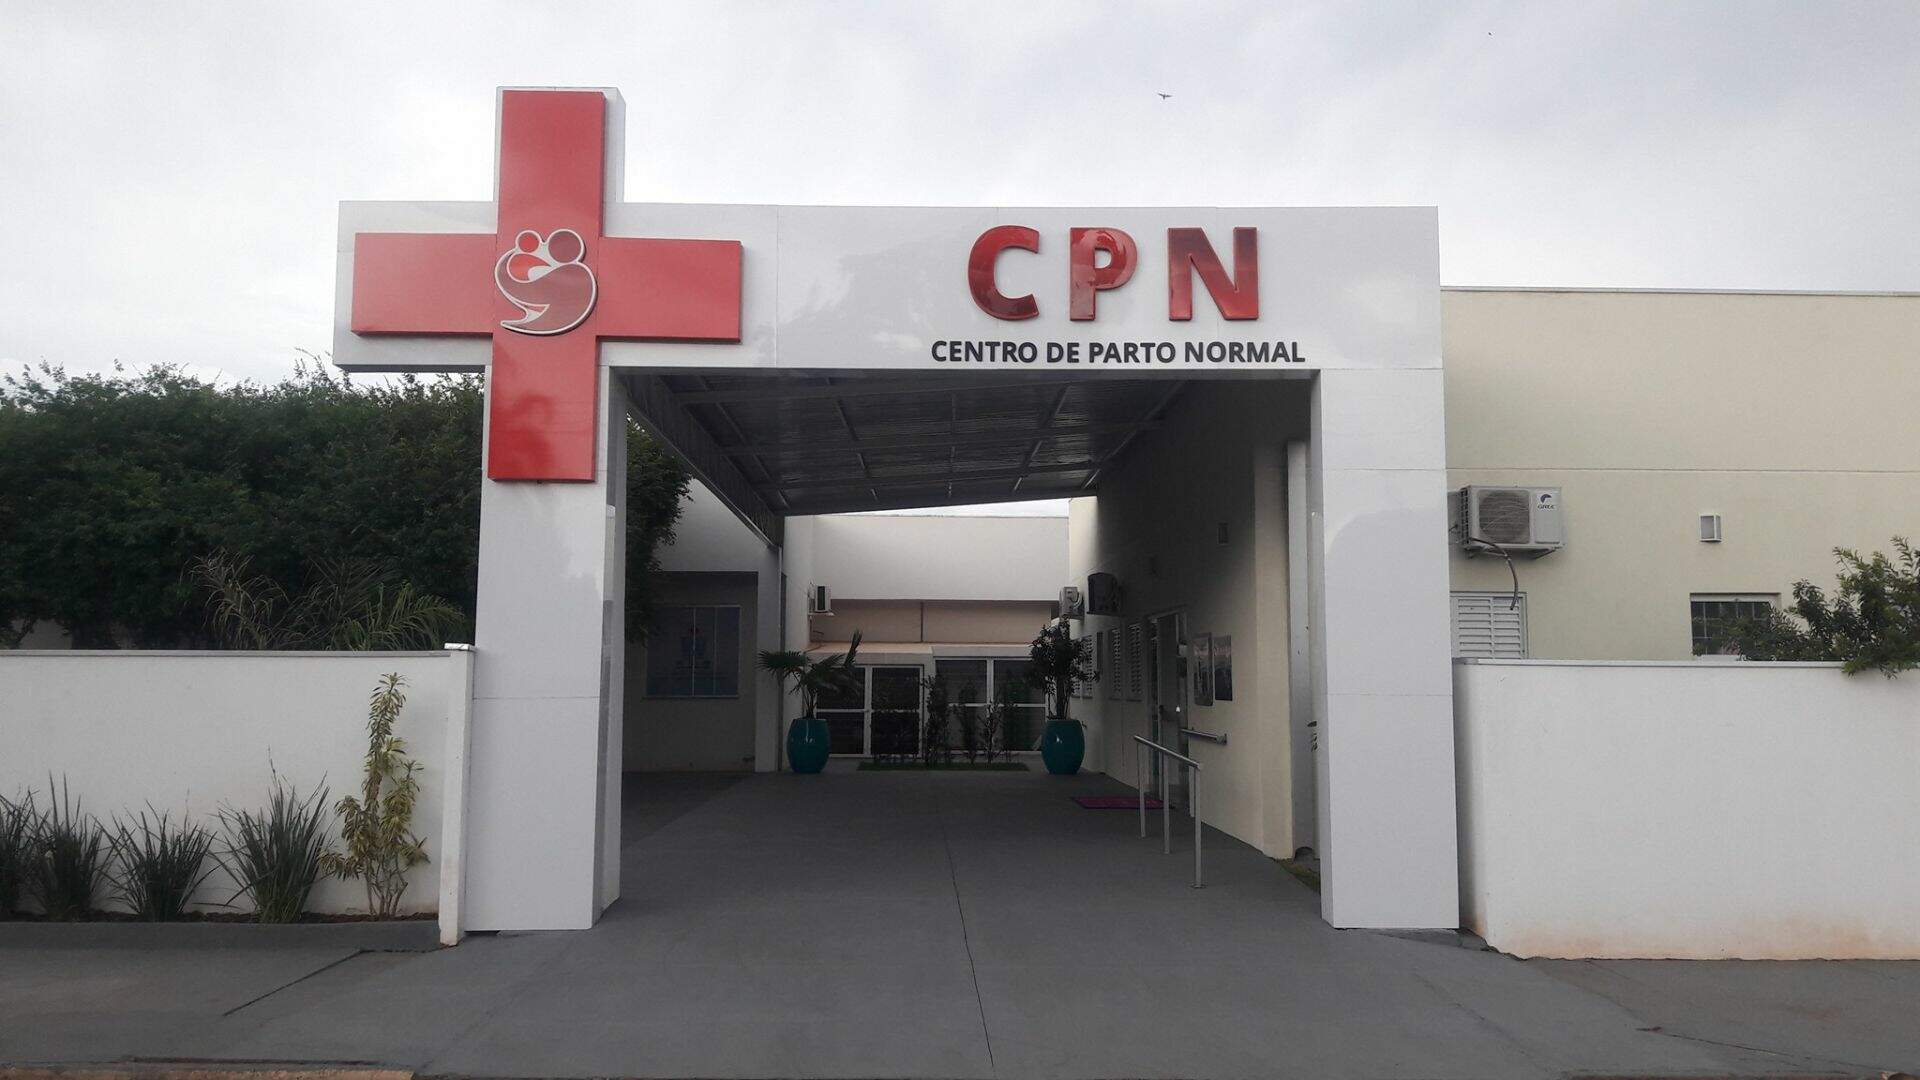 Único de Mato Grosso do Sul, Centro de Parto Normal fecha as portas após sete anos